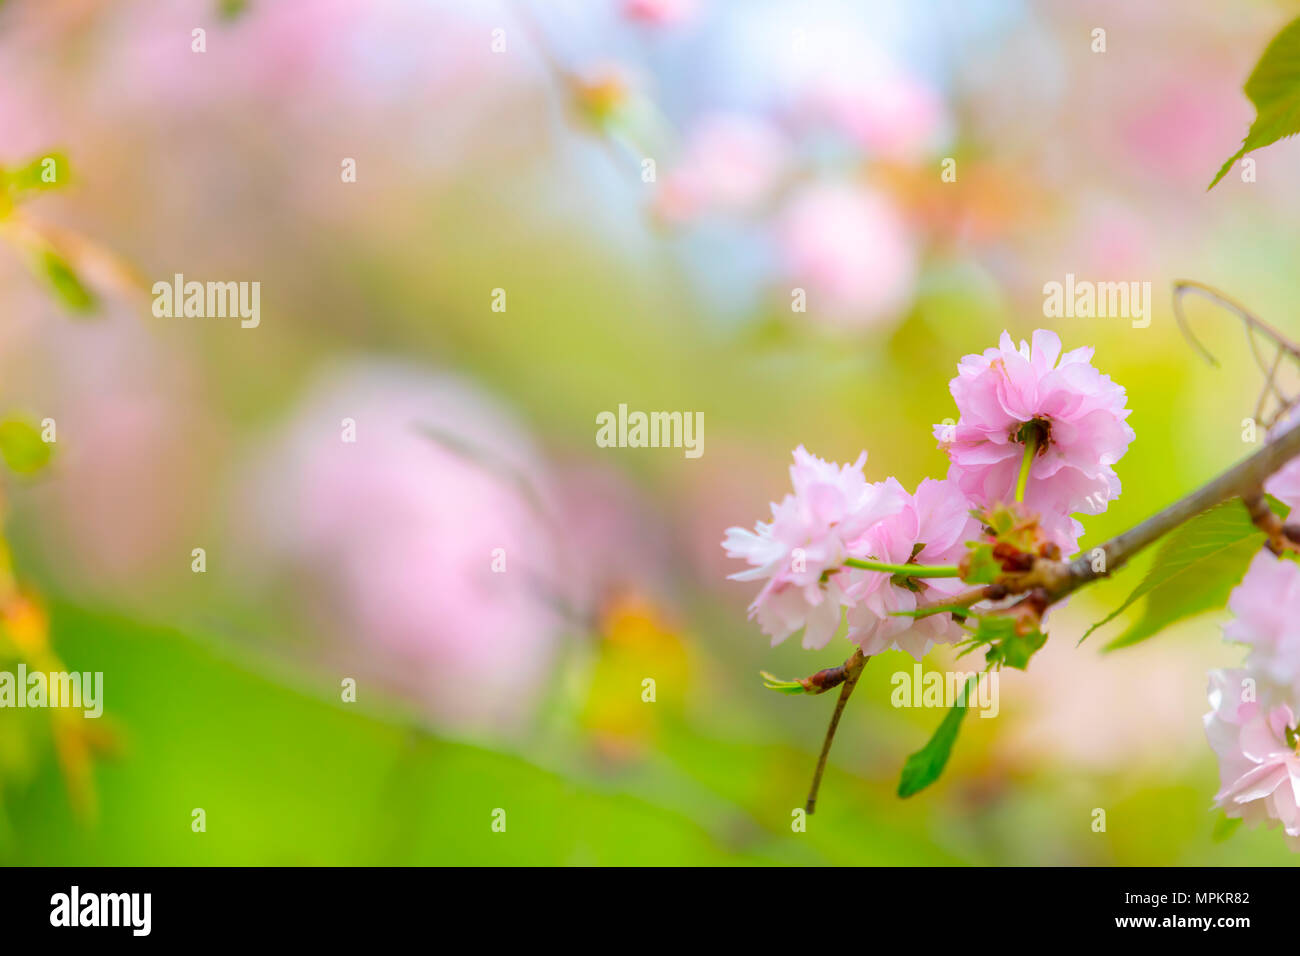 Blüte der Baum als Zeichen des Frühlings. Selektive konzentrieren. Soft Focus Frühling Hintergrund. Fokus auf Blume Stockfoto